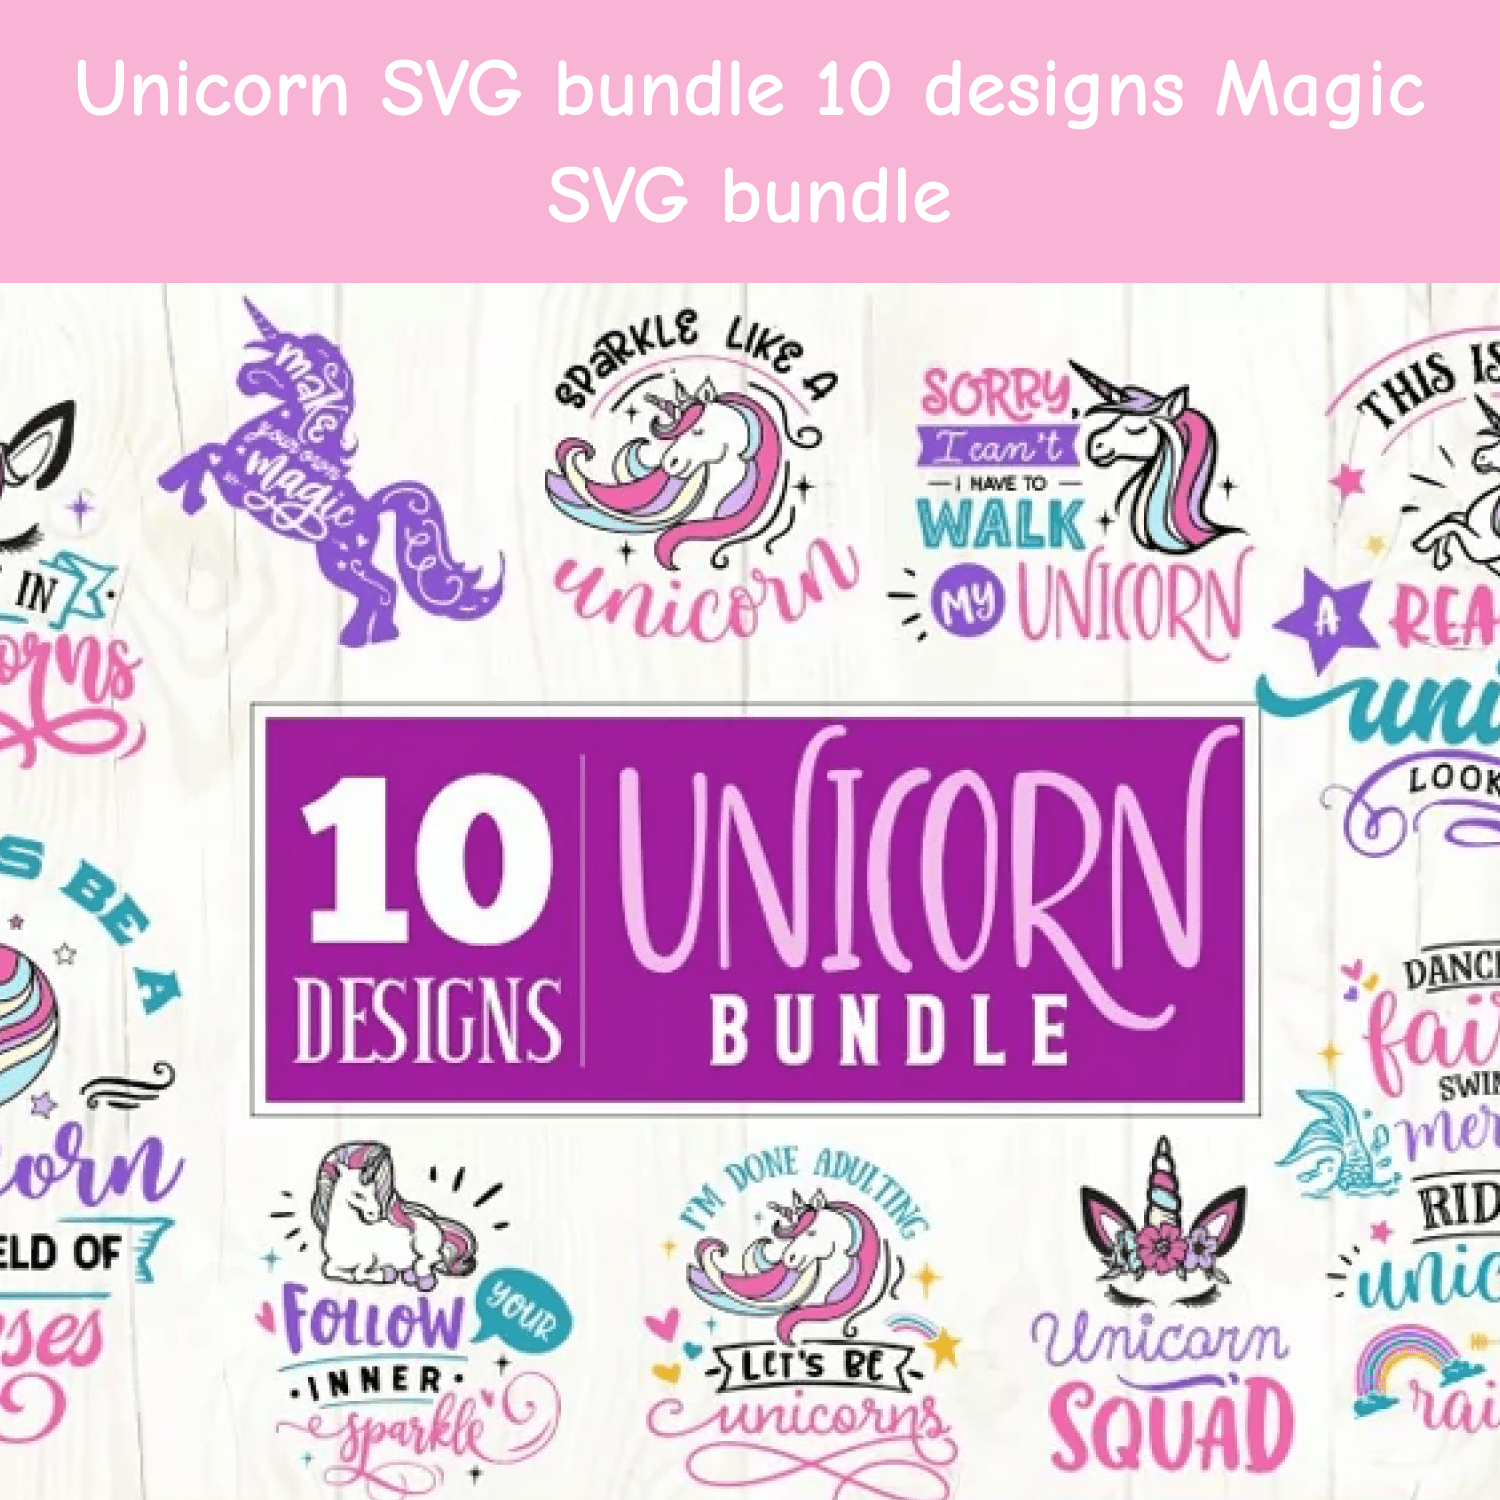 Unicorn SVG bundle 10 designs Magic SVG bundle cover.